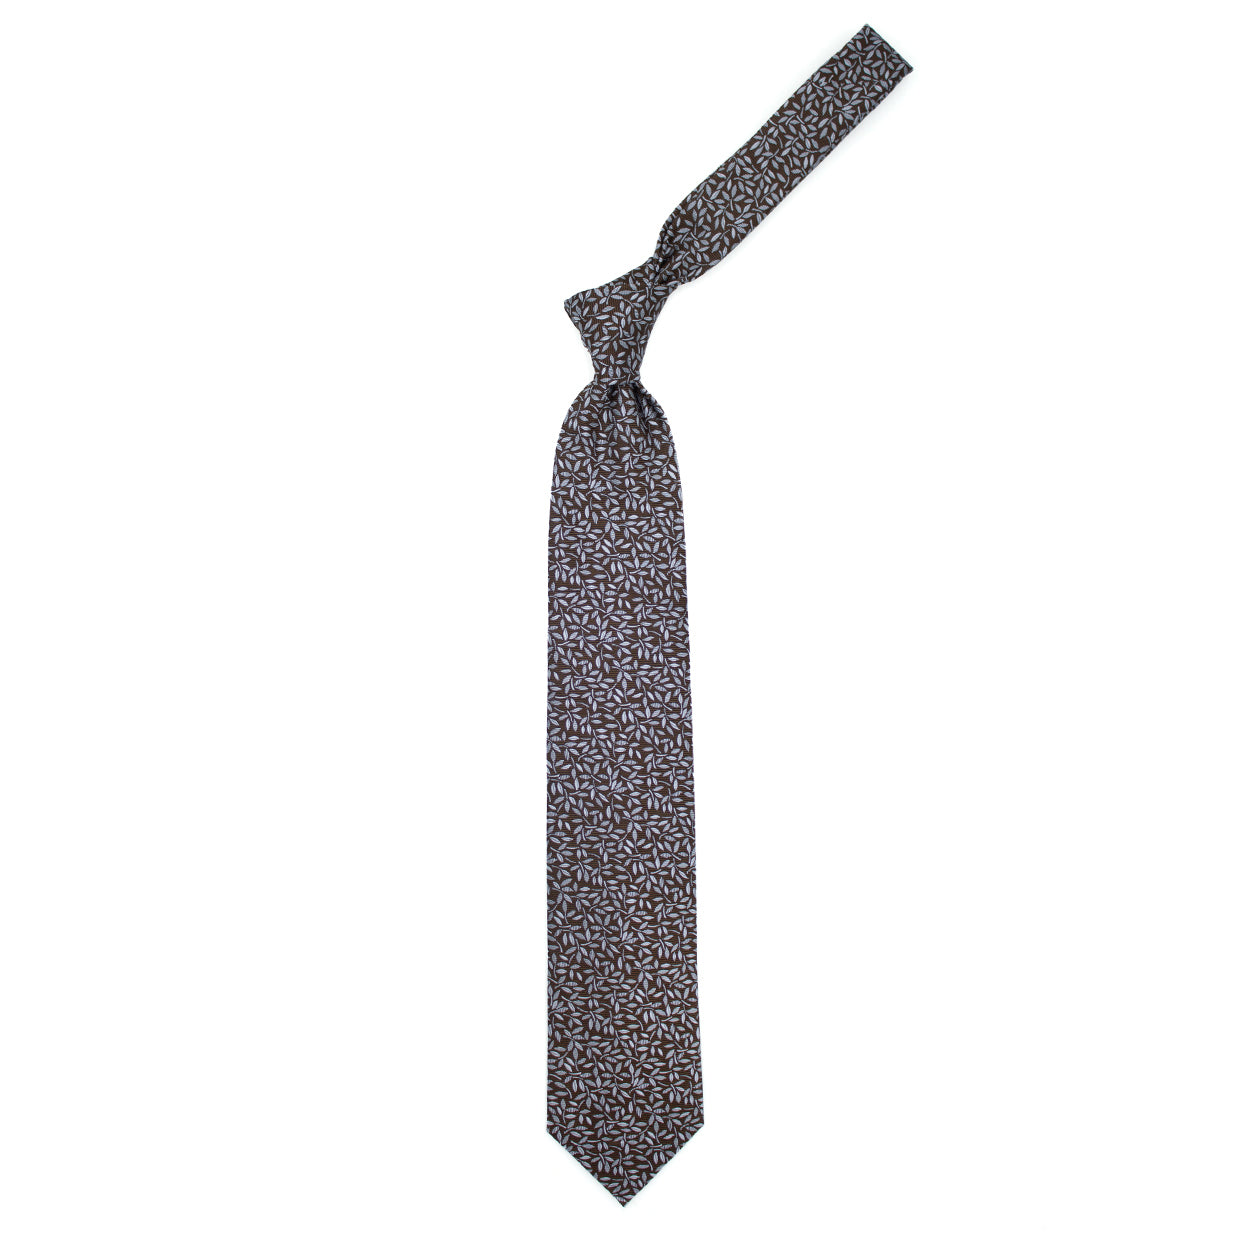 Cravatta marrone con foglie grigie